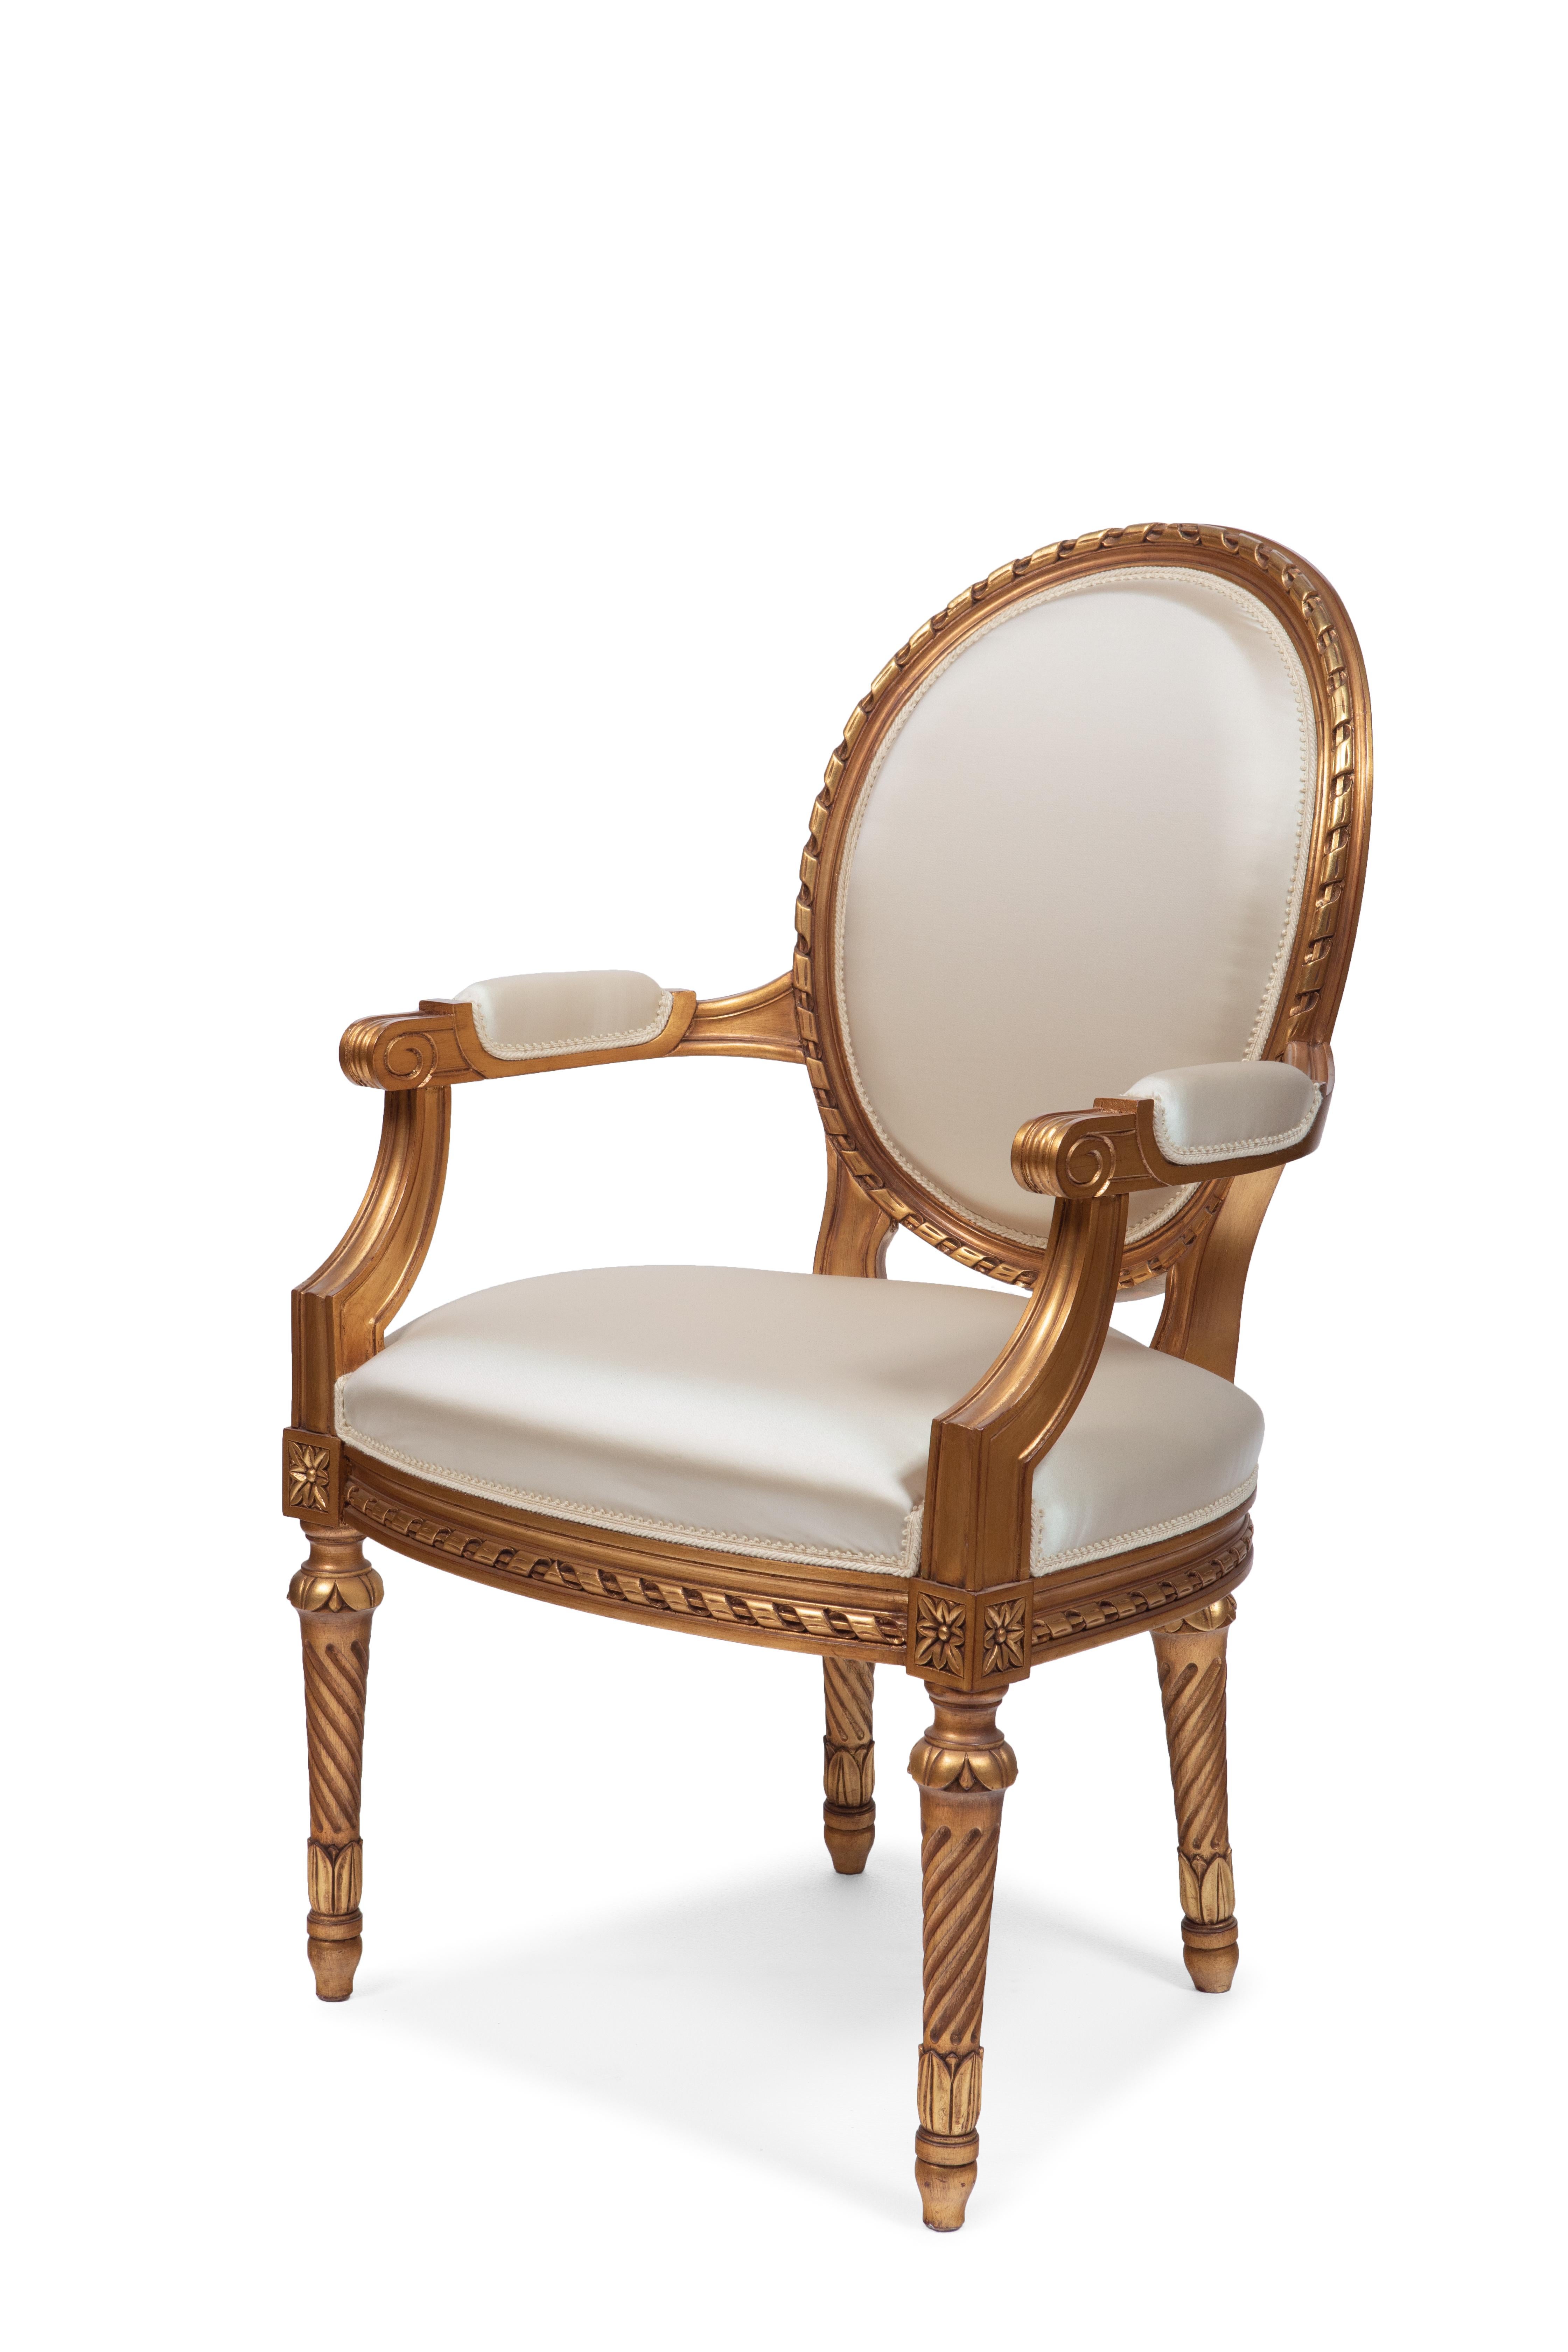 Esstischsessel im Stil Luis XVI. Er wurde Anfang der 90er Jahre zum ersten Mal vorgestellt und wurde zu einem ikonischen Sessel für die Belloni-Produktion.
Holzrahmen, in Italien von Hand geschnitzt. Handaufgetragenes Blattgold (in der